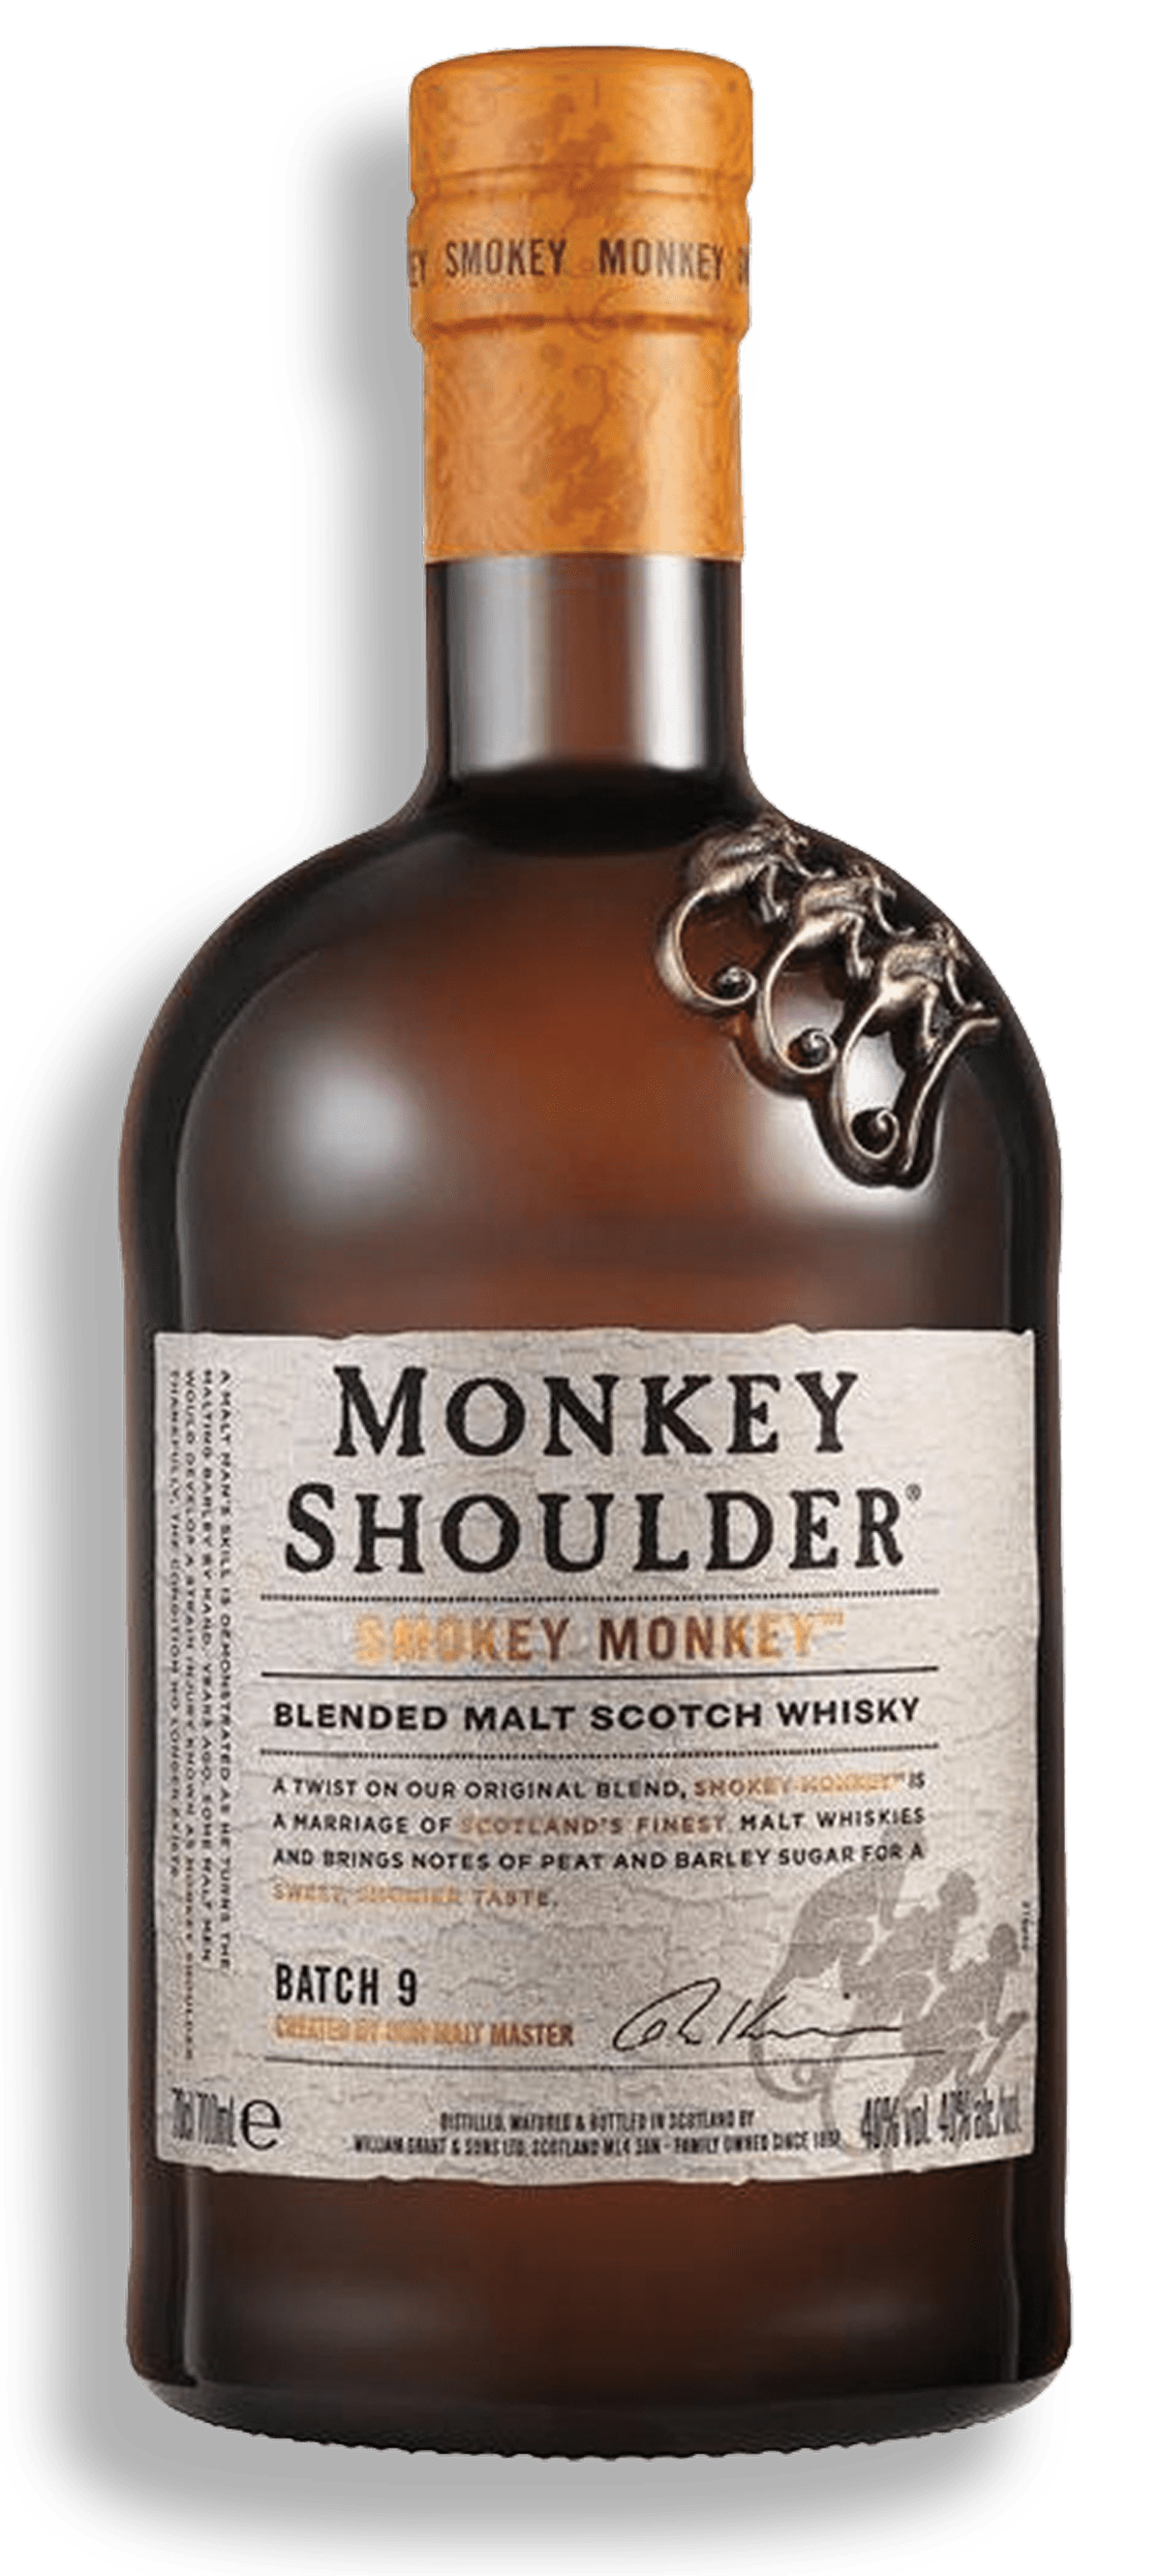 Monkey Shoulder Blended Malt Scotch